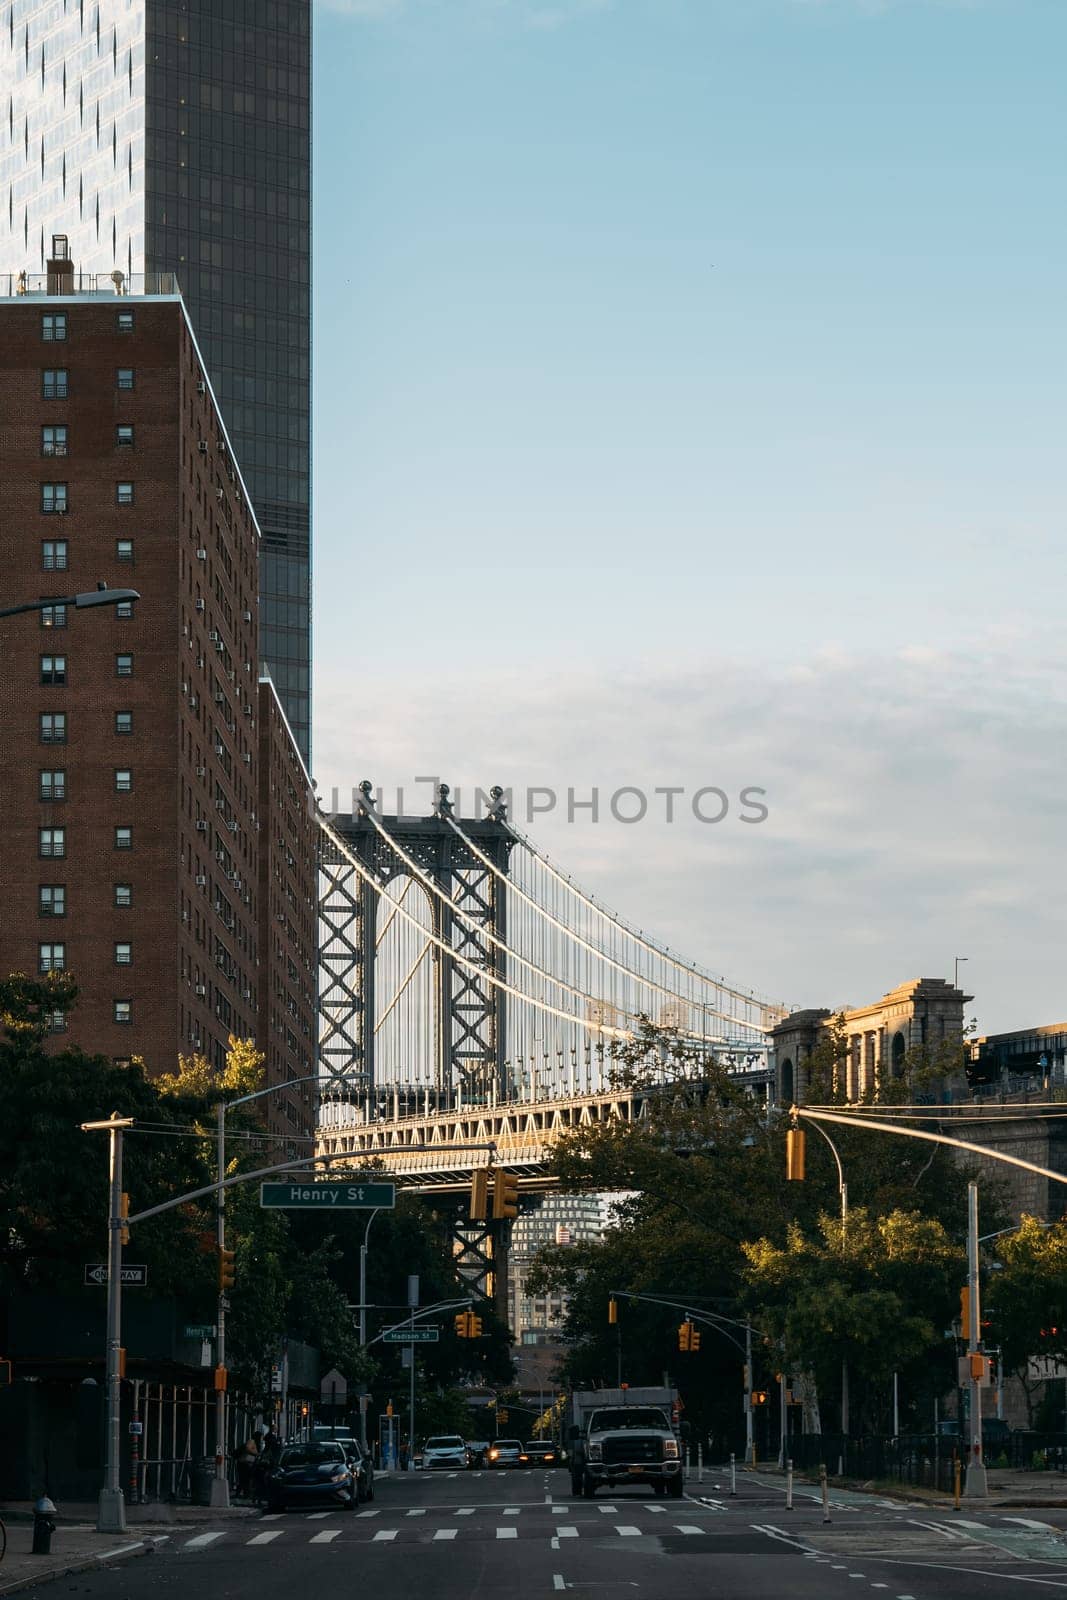 Manhattan Bridge Framed by New York Buildings under Clear Skies by apavlin